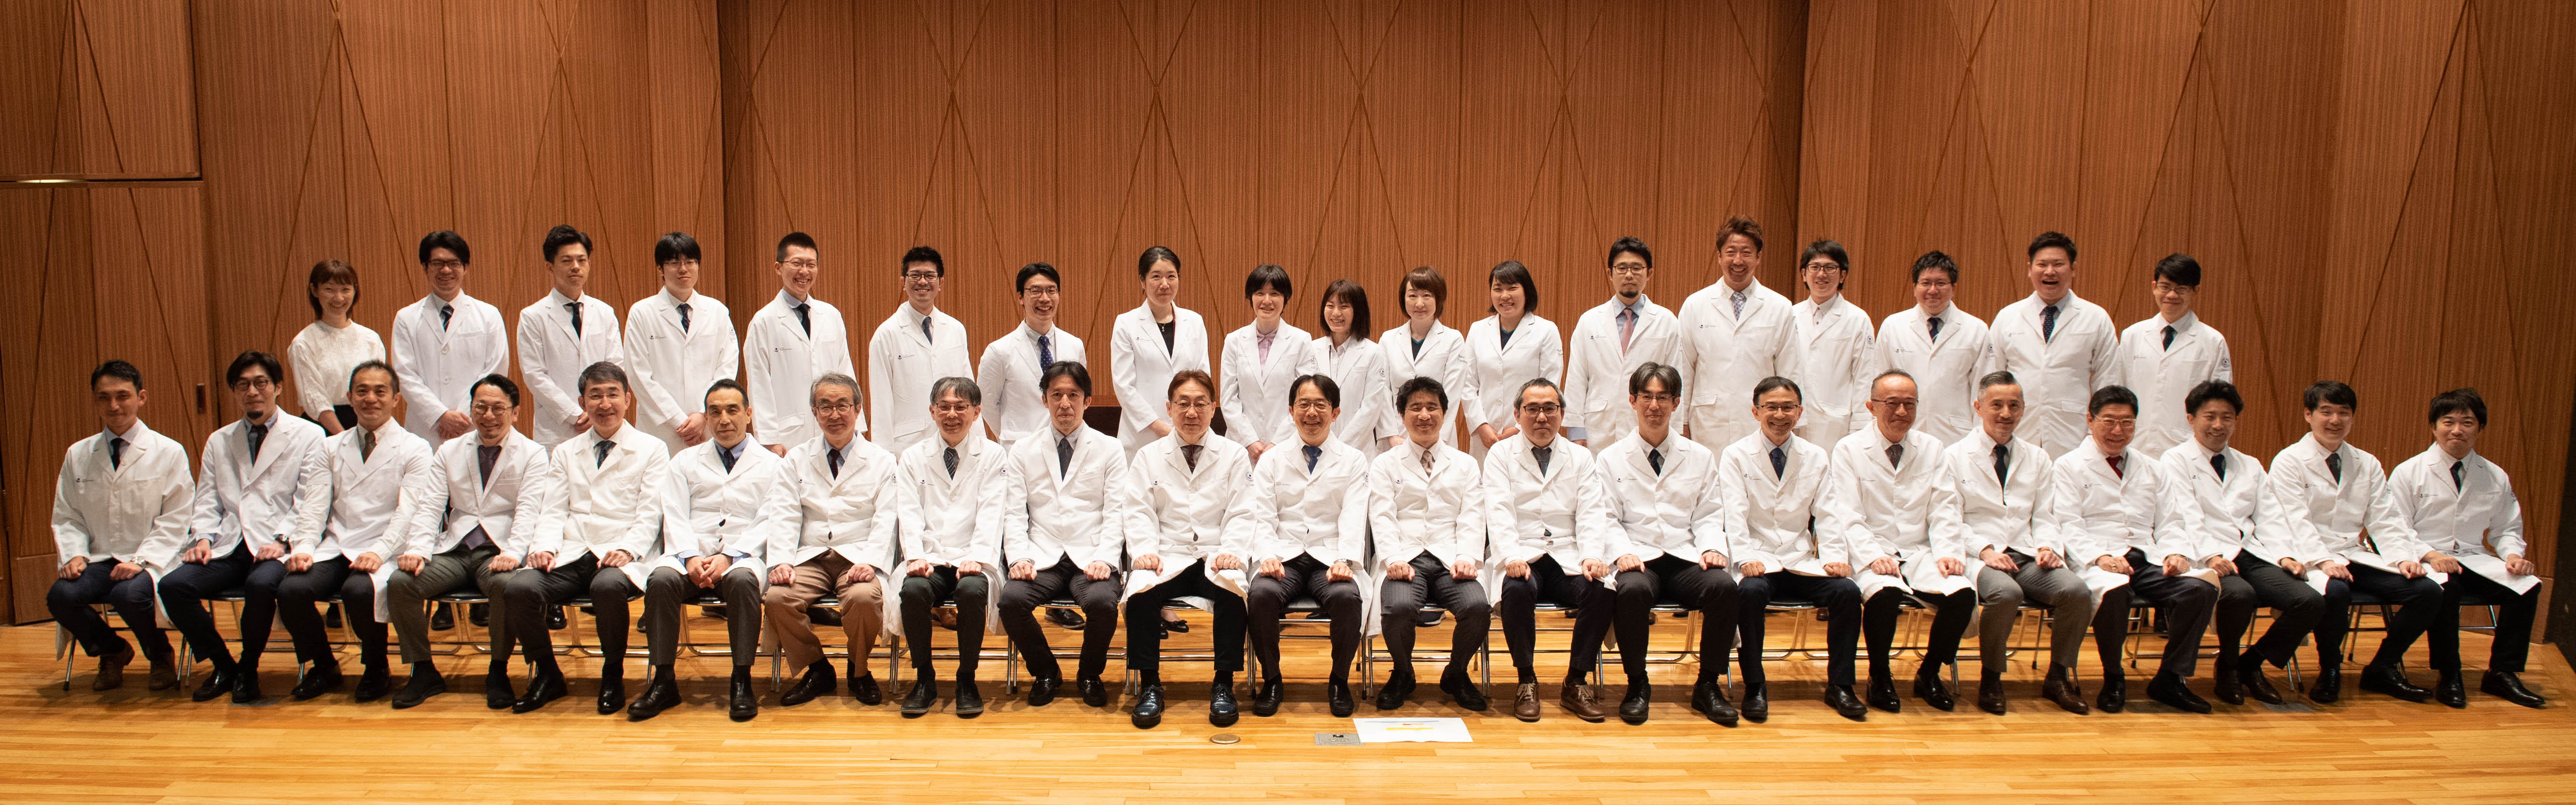 医科 大学 合格 発表 藤田 2021年度藤田医科大学一般選抜の2次試験正規合格者が発表されました